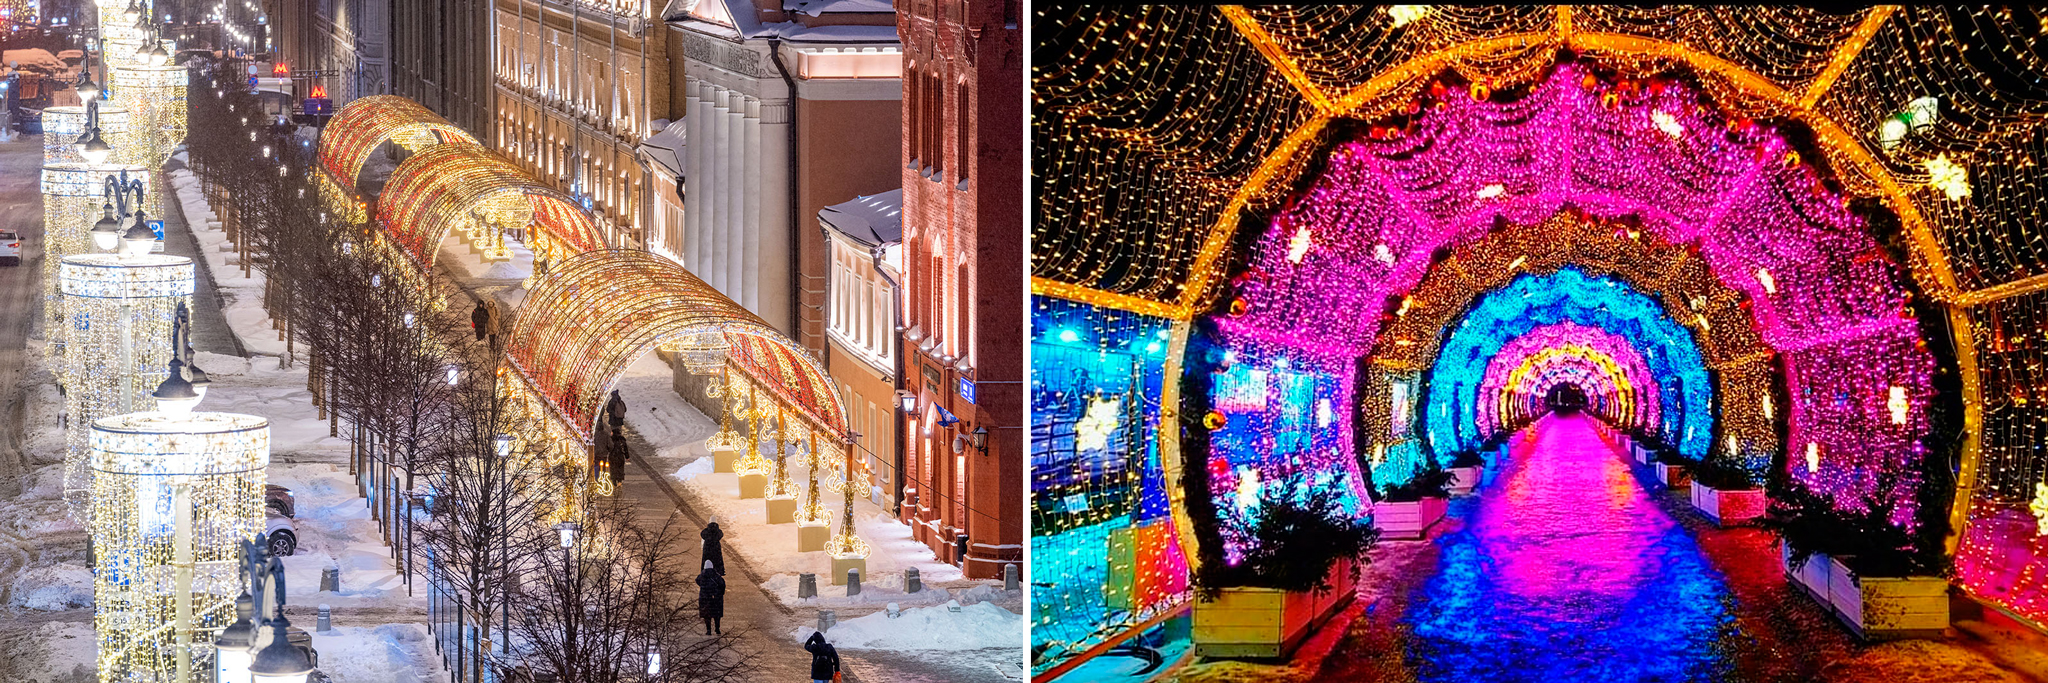 Новогоднее украшение Москвы: улицы